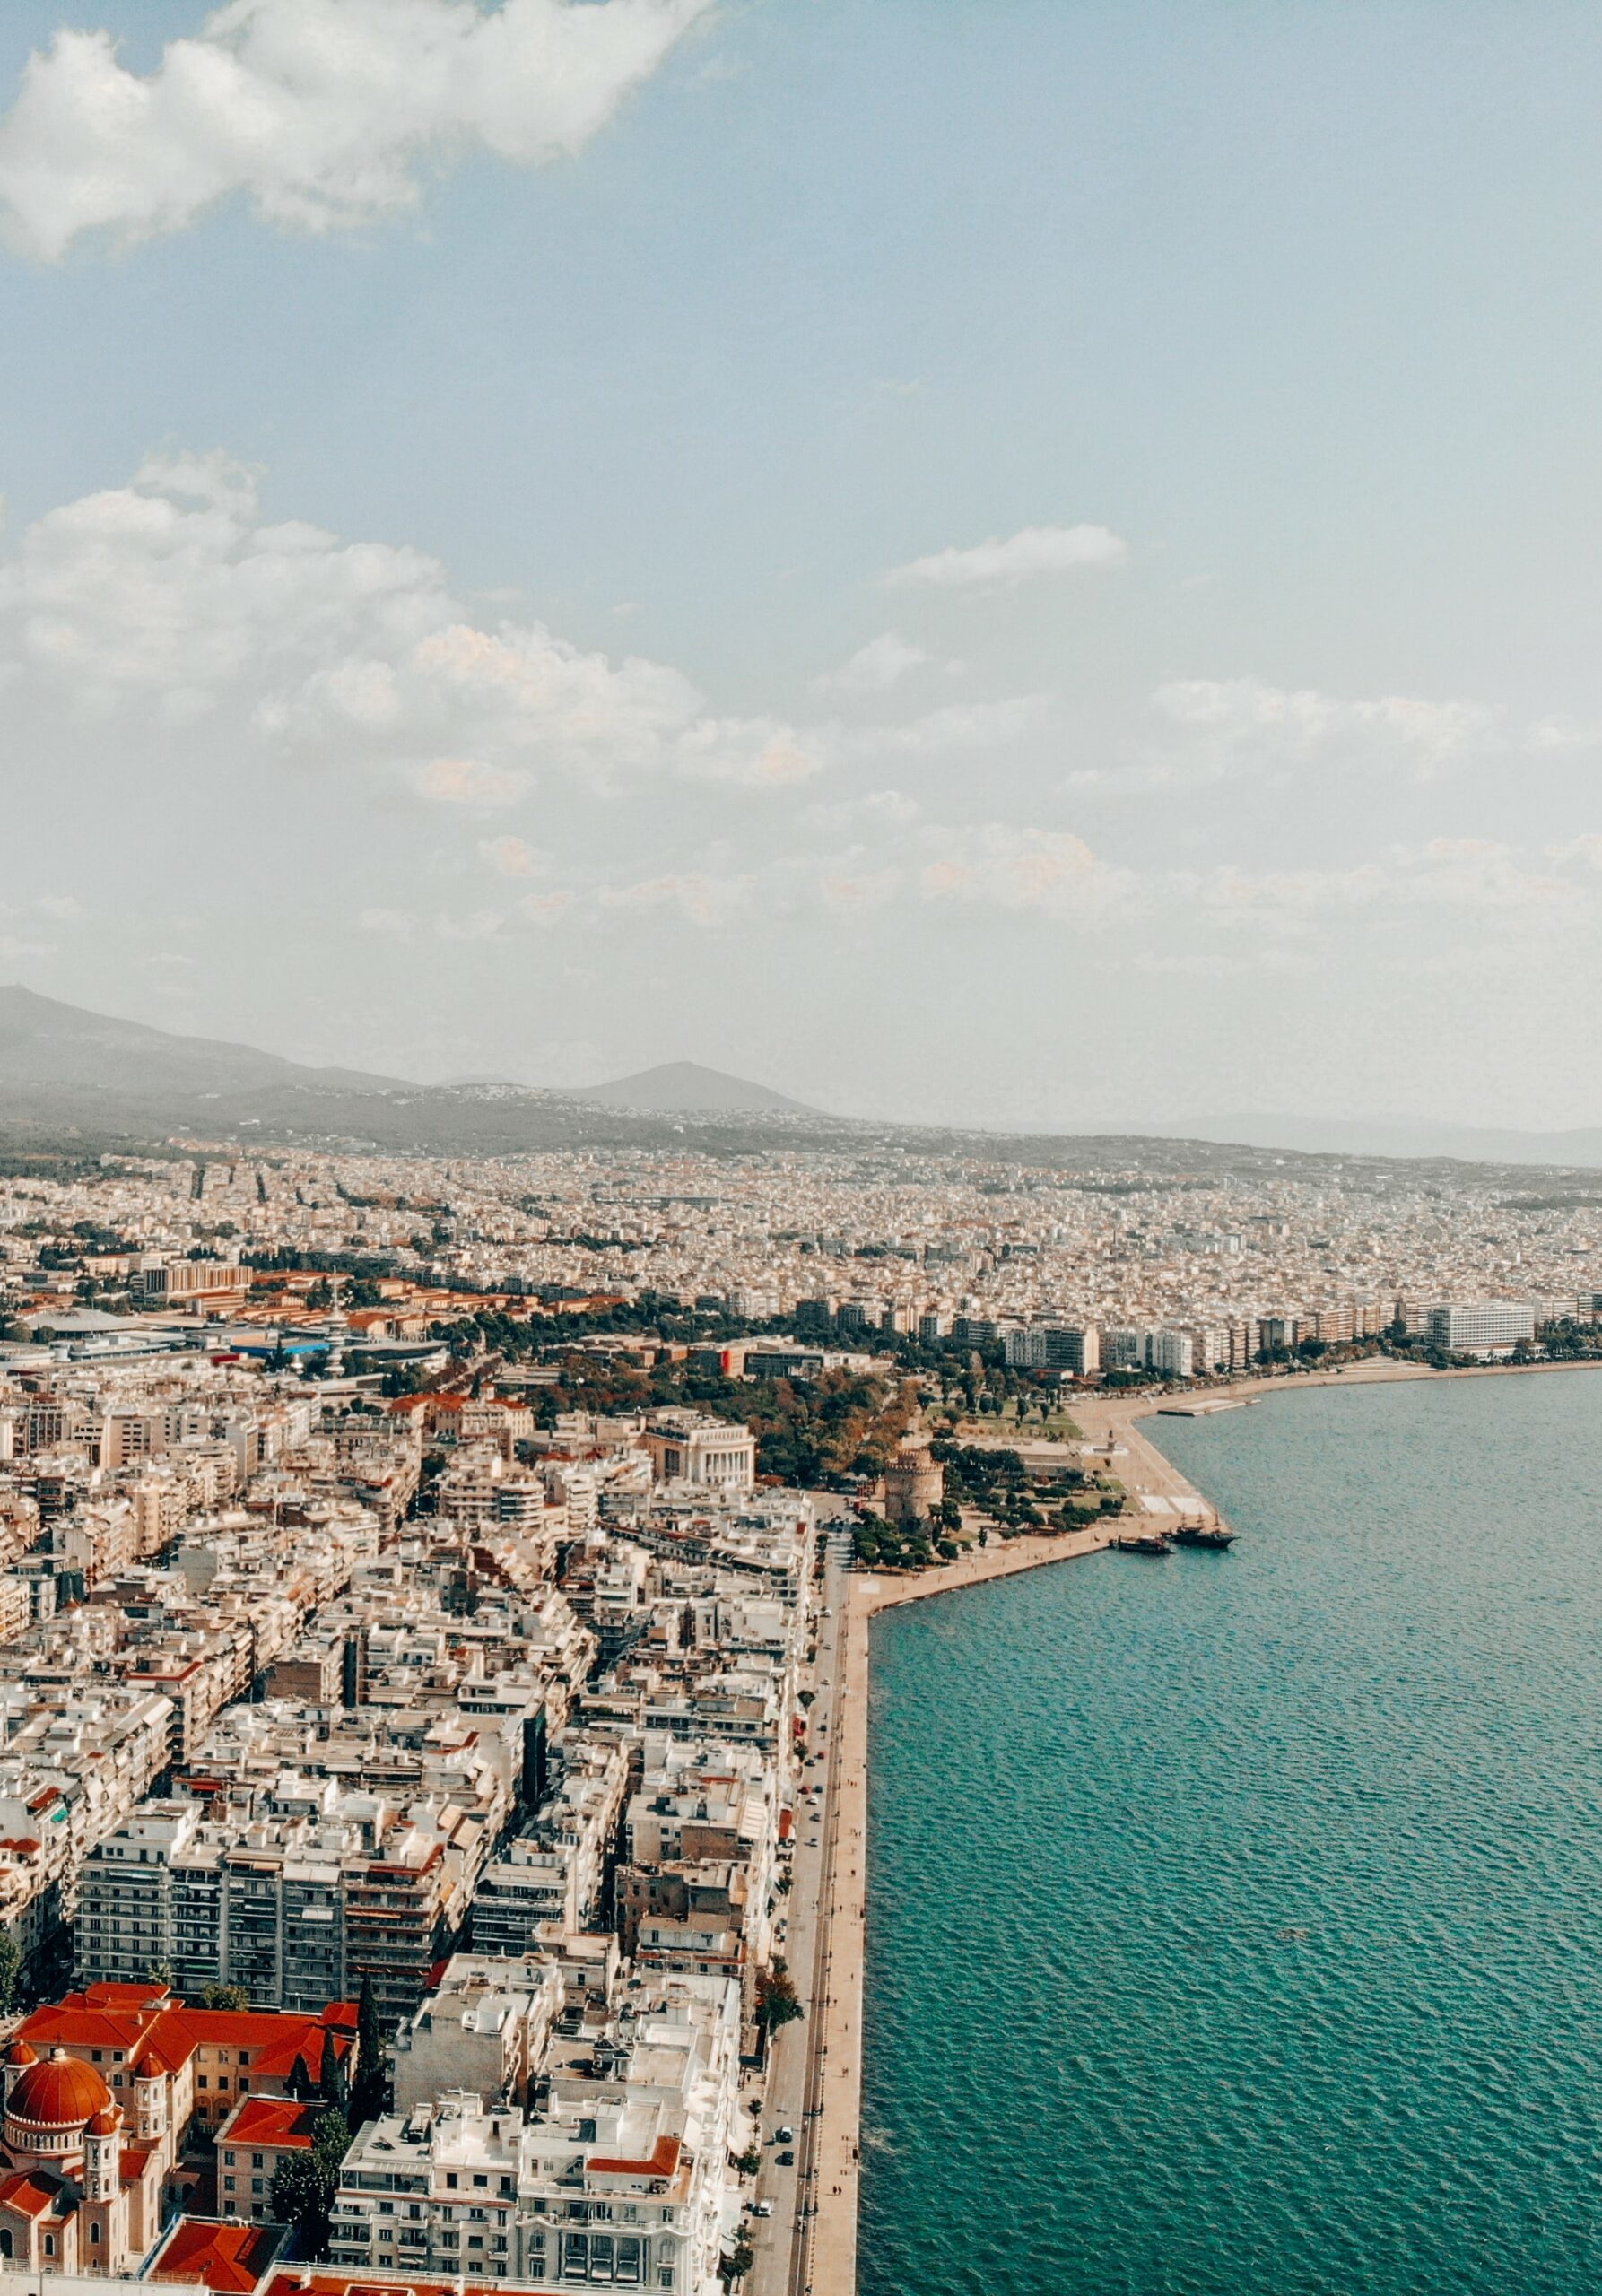 Θεσσαλονίκη: Ευοίωνες προοπτικές για τον τουρισμό
